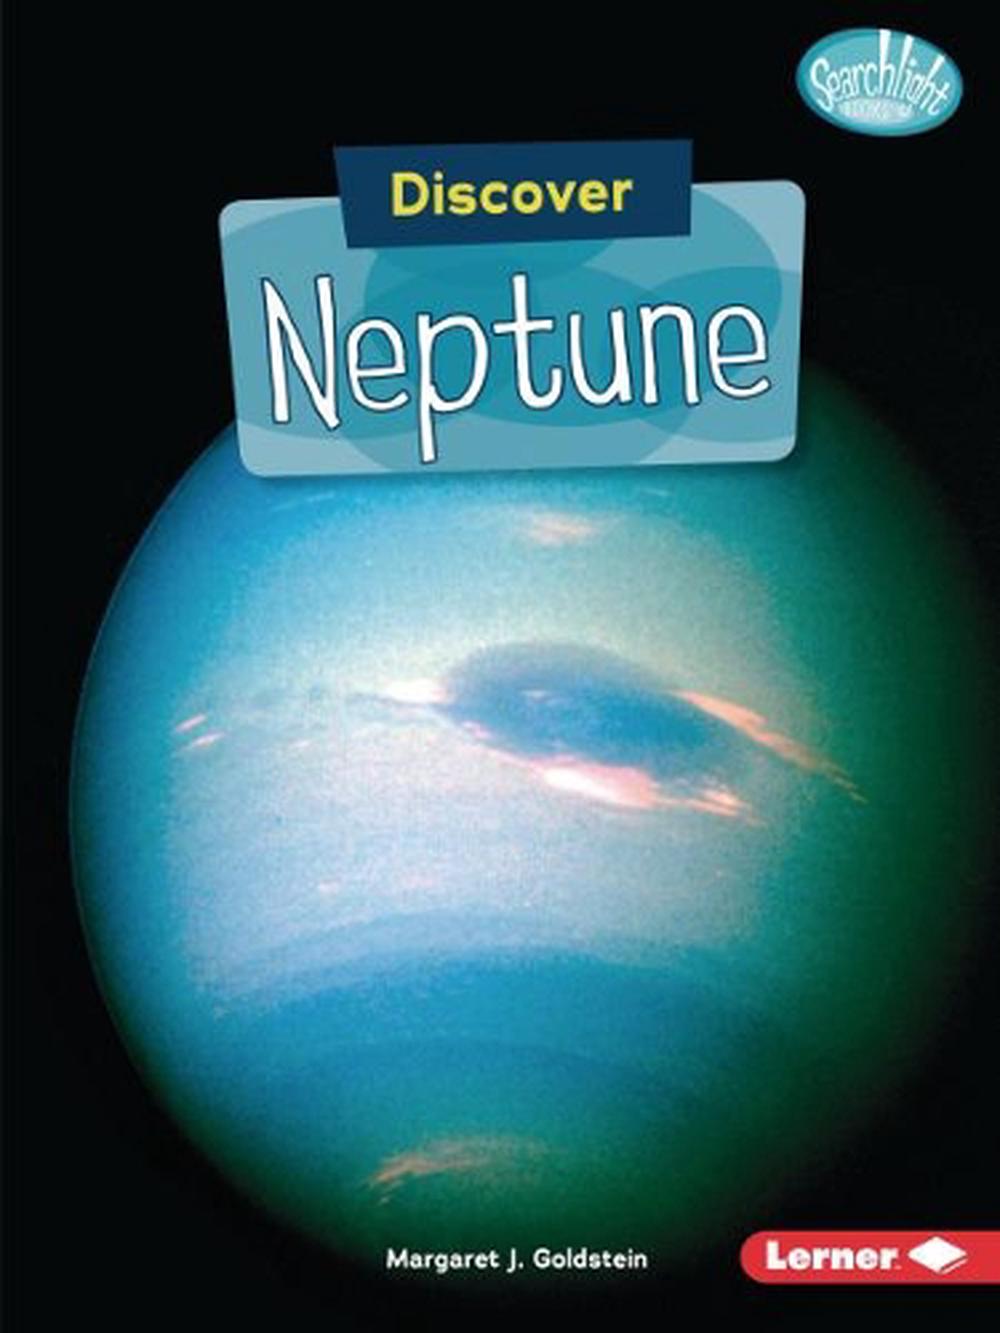 Uranus and Neptune by Carolyn Kennett